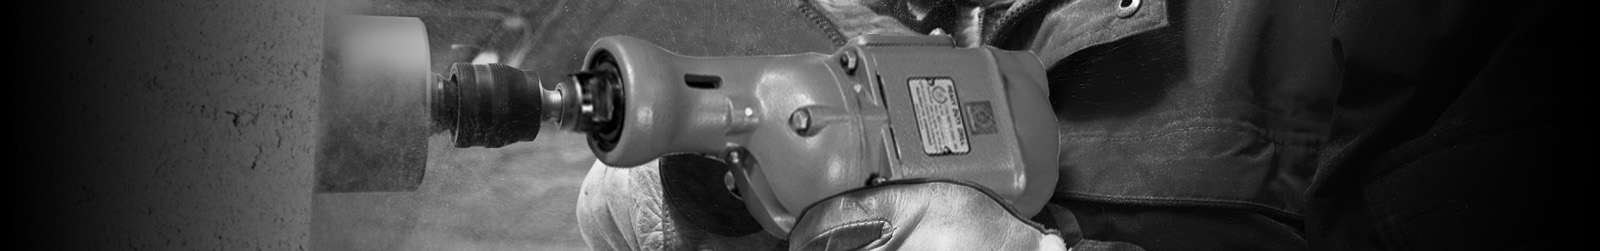 Pistol Grip Drill Supplier